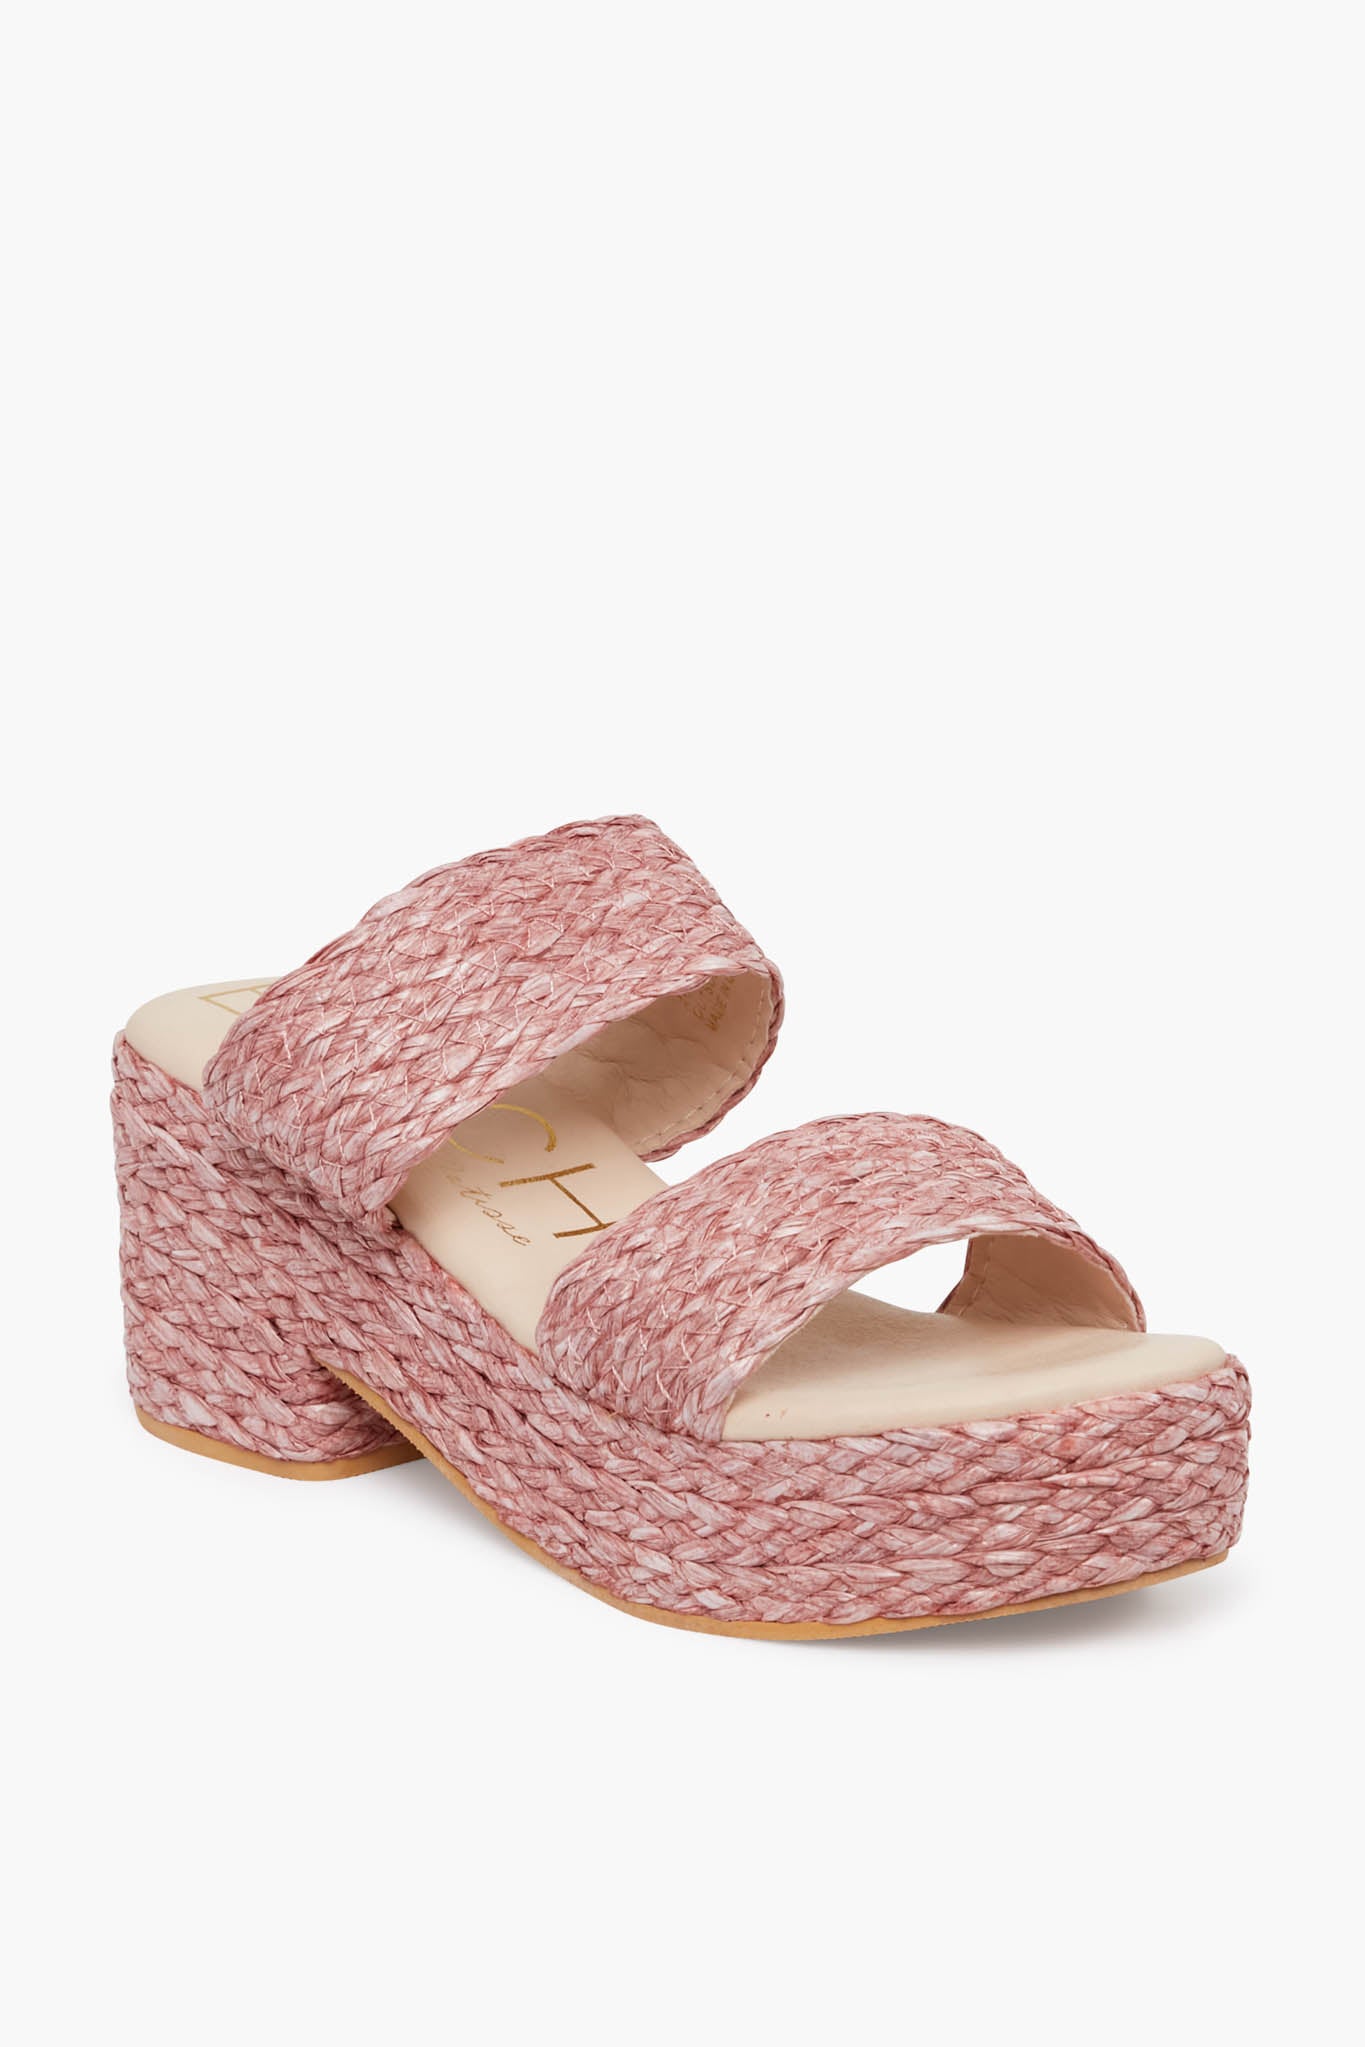 Truffle Collection Glitter Velvet Block Heel Sandal in Natural